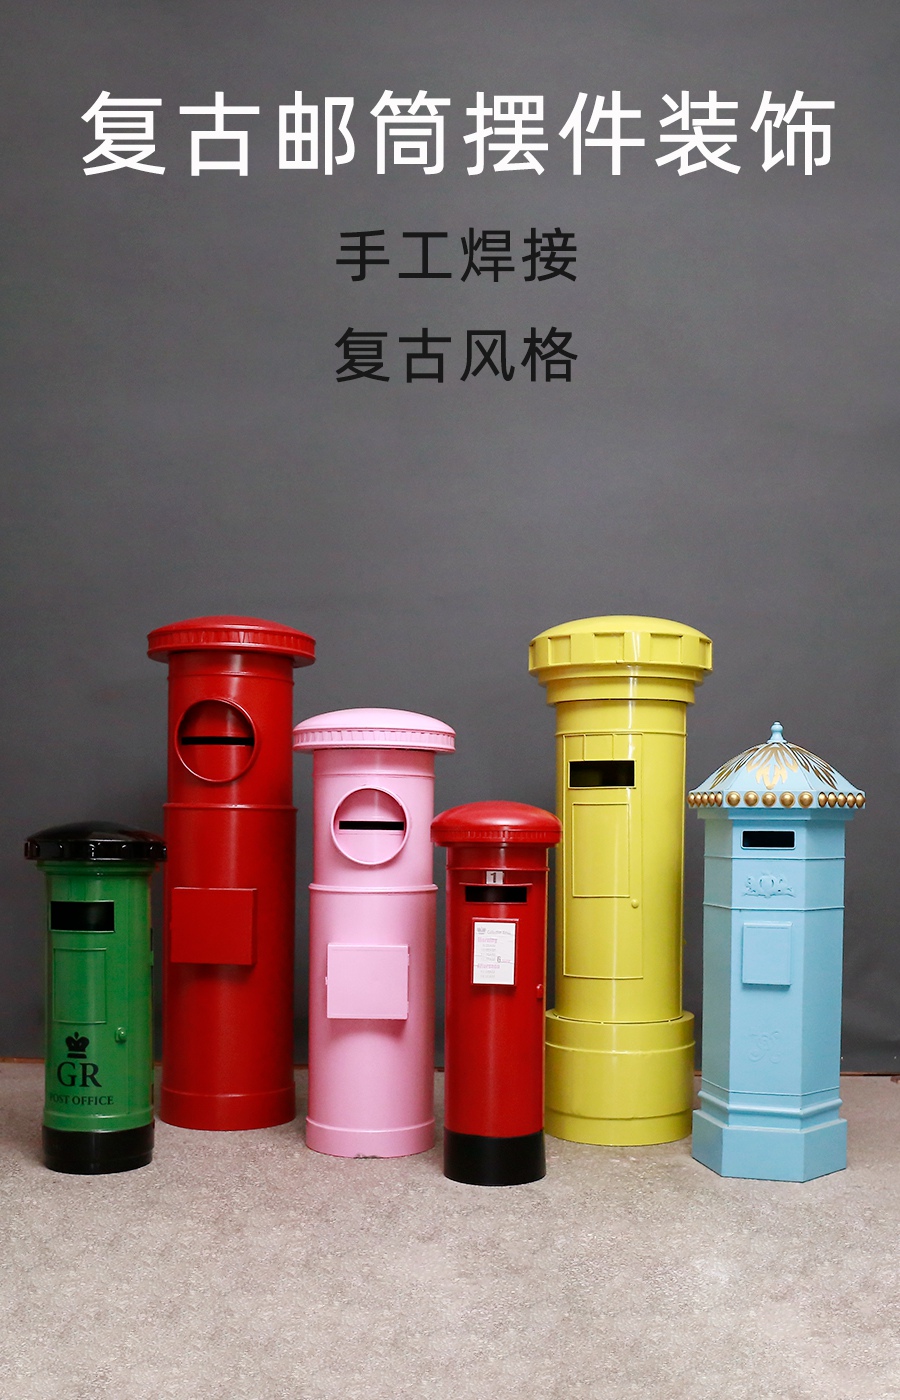 工业风复古风铁艺日式英伦风邮政局邮筒摆件模型可定制尺寸颜色